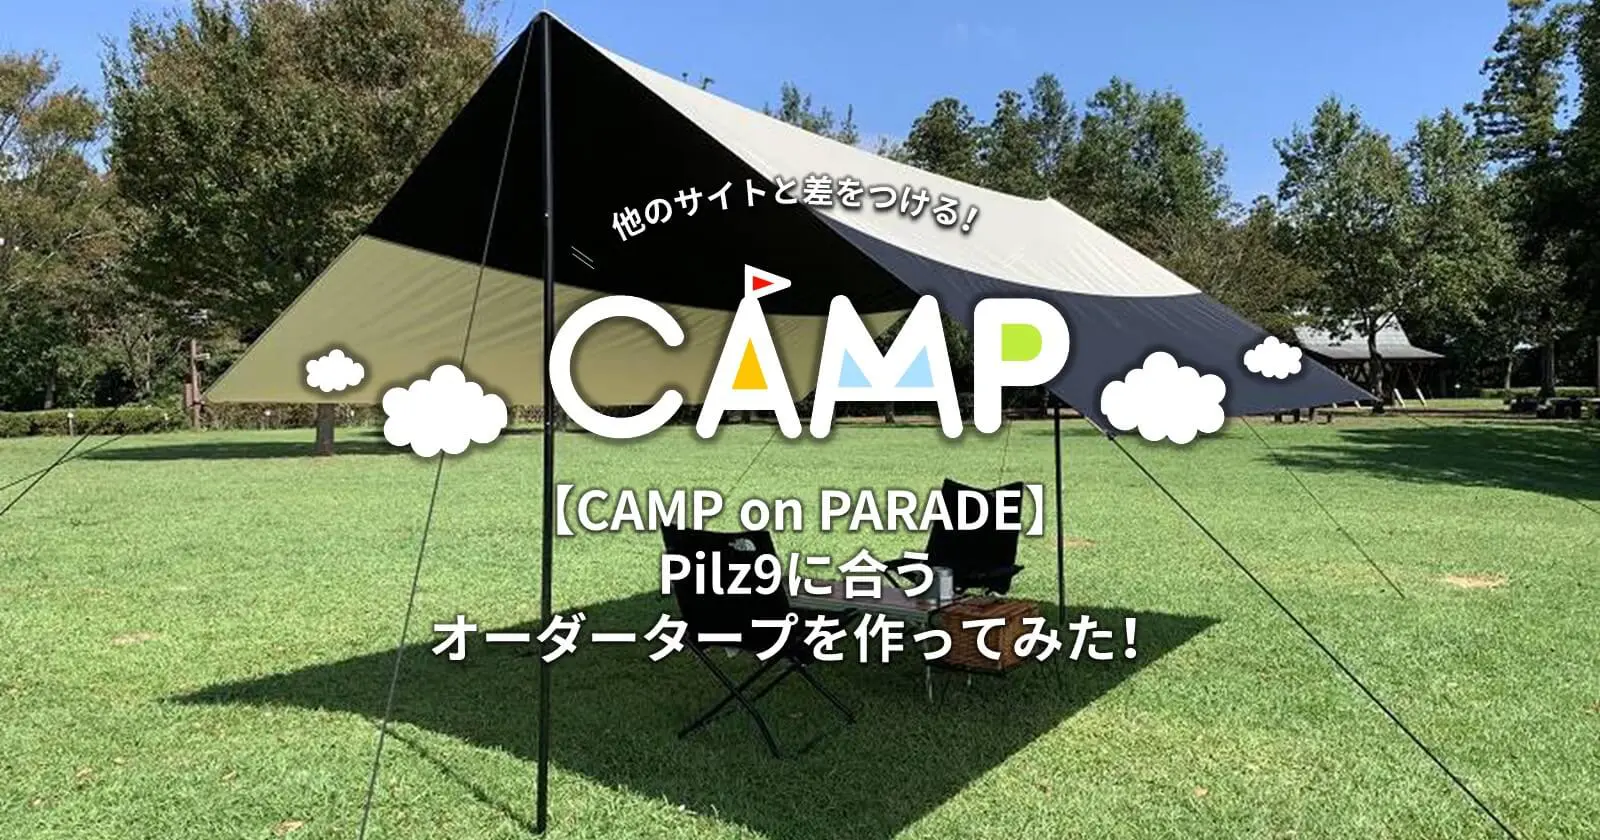 CAMP on PARADE】Pilz9に合うオーダータープを作ってみた！ | キャンプ